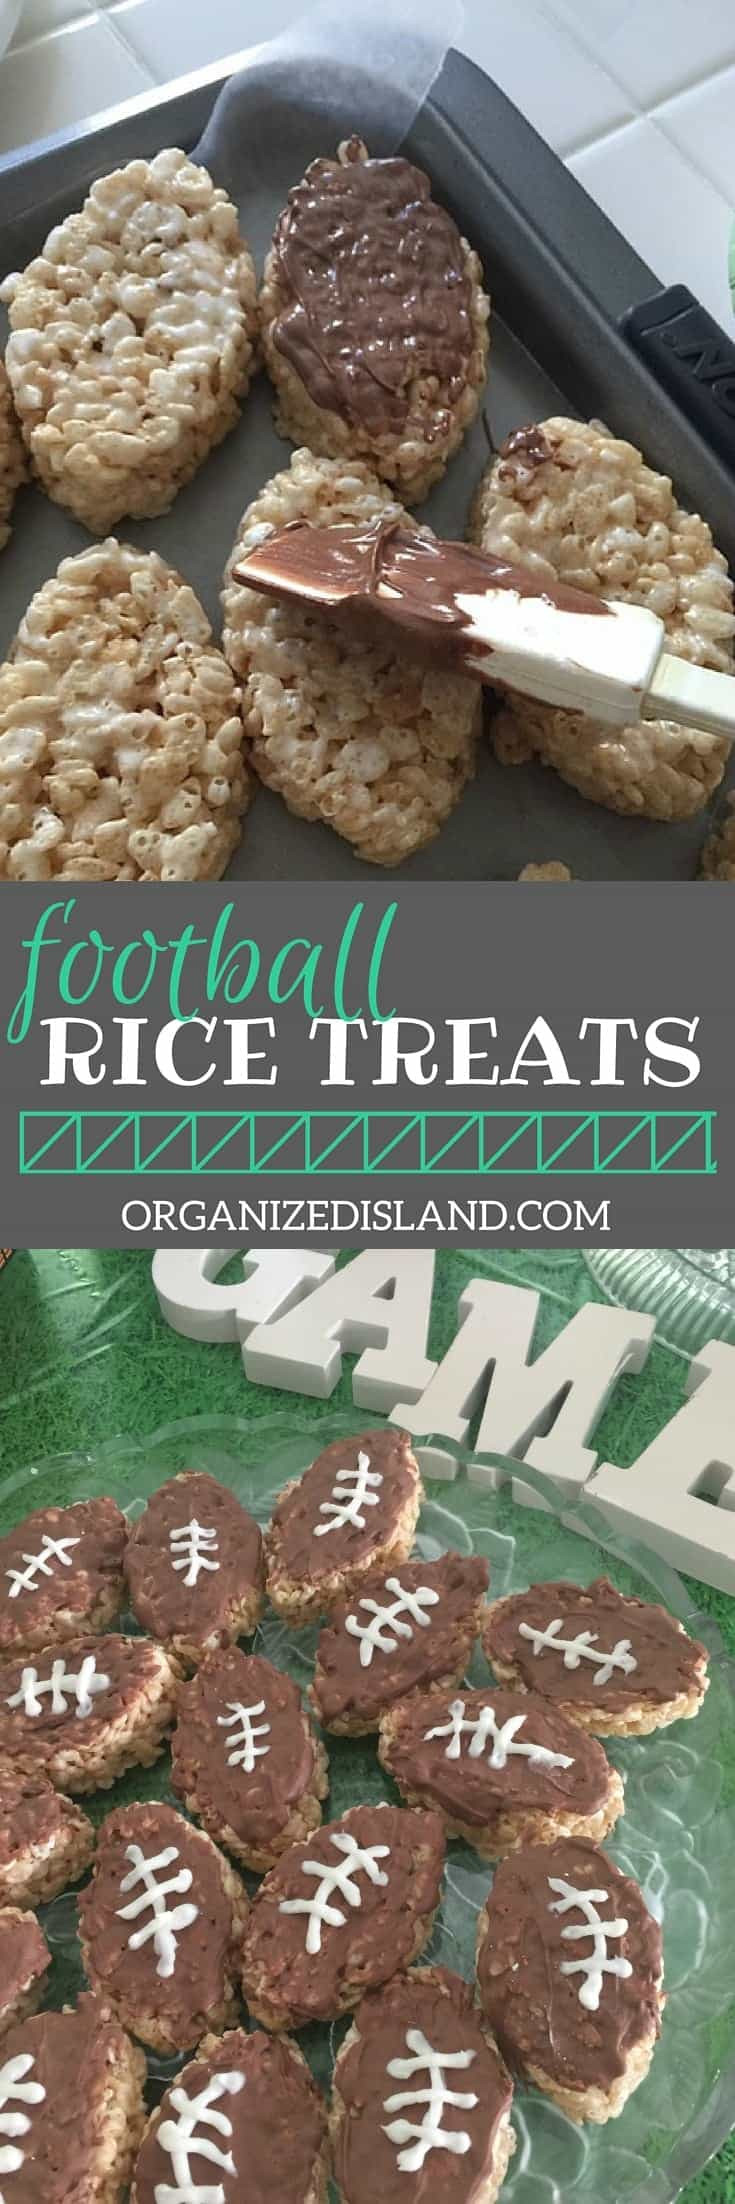 Football Desserts Recipes
 Super Bowl Snack Idea Football Treats